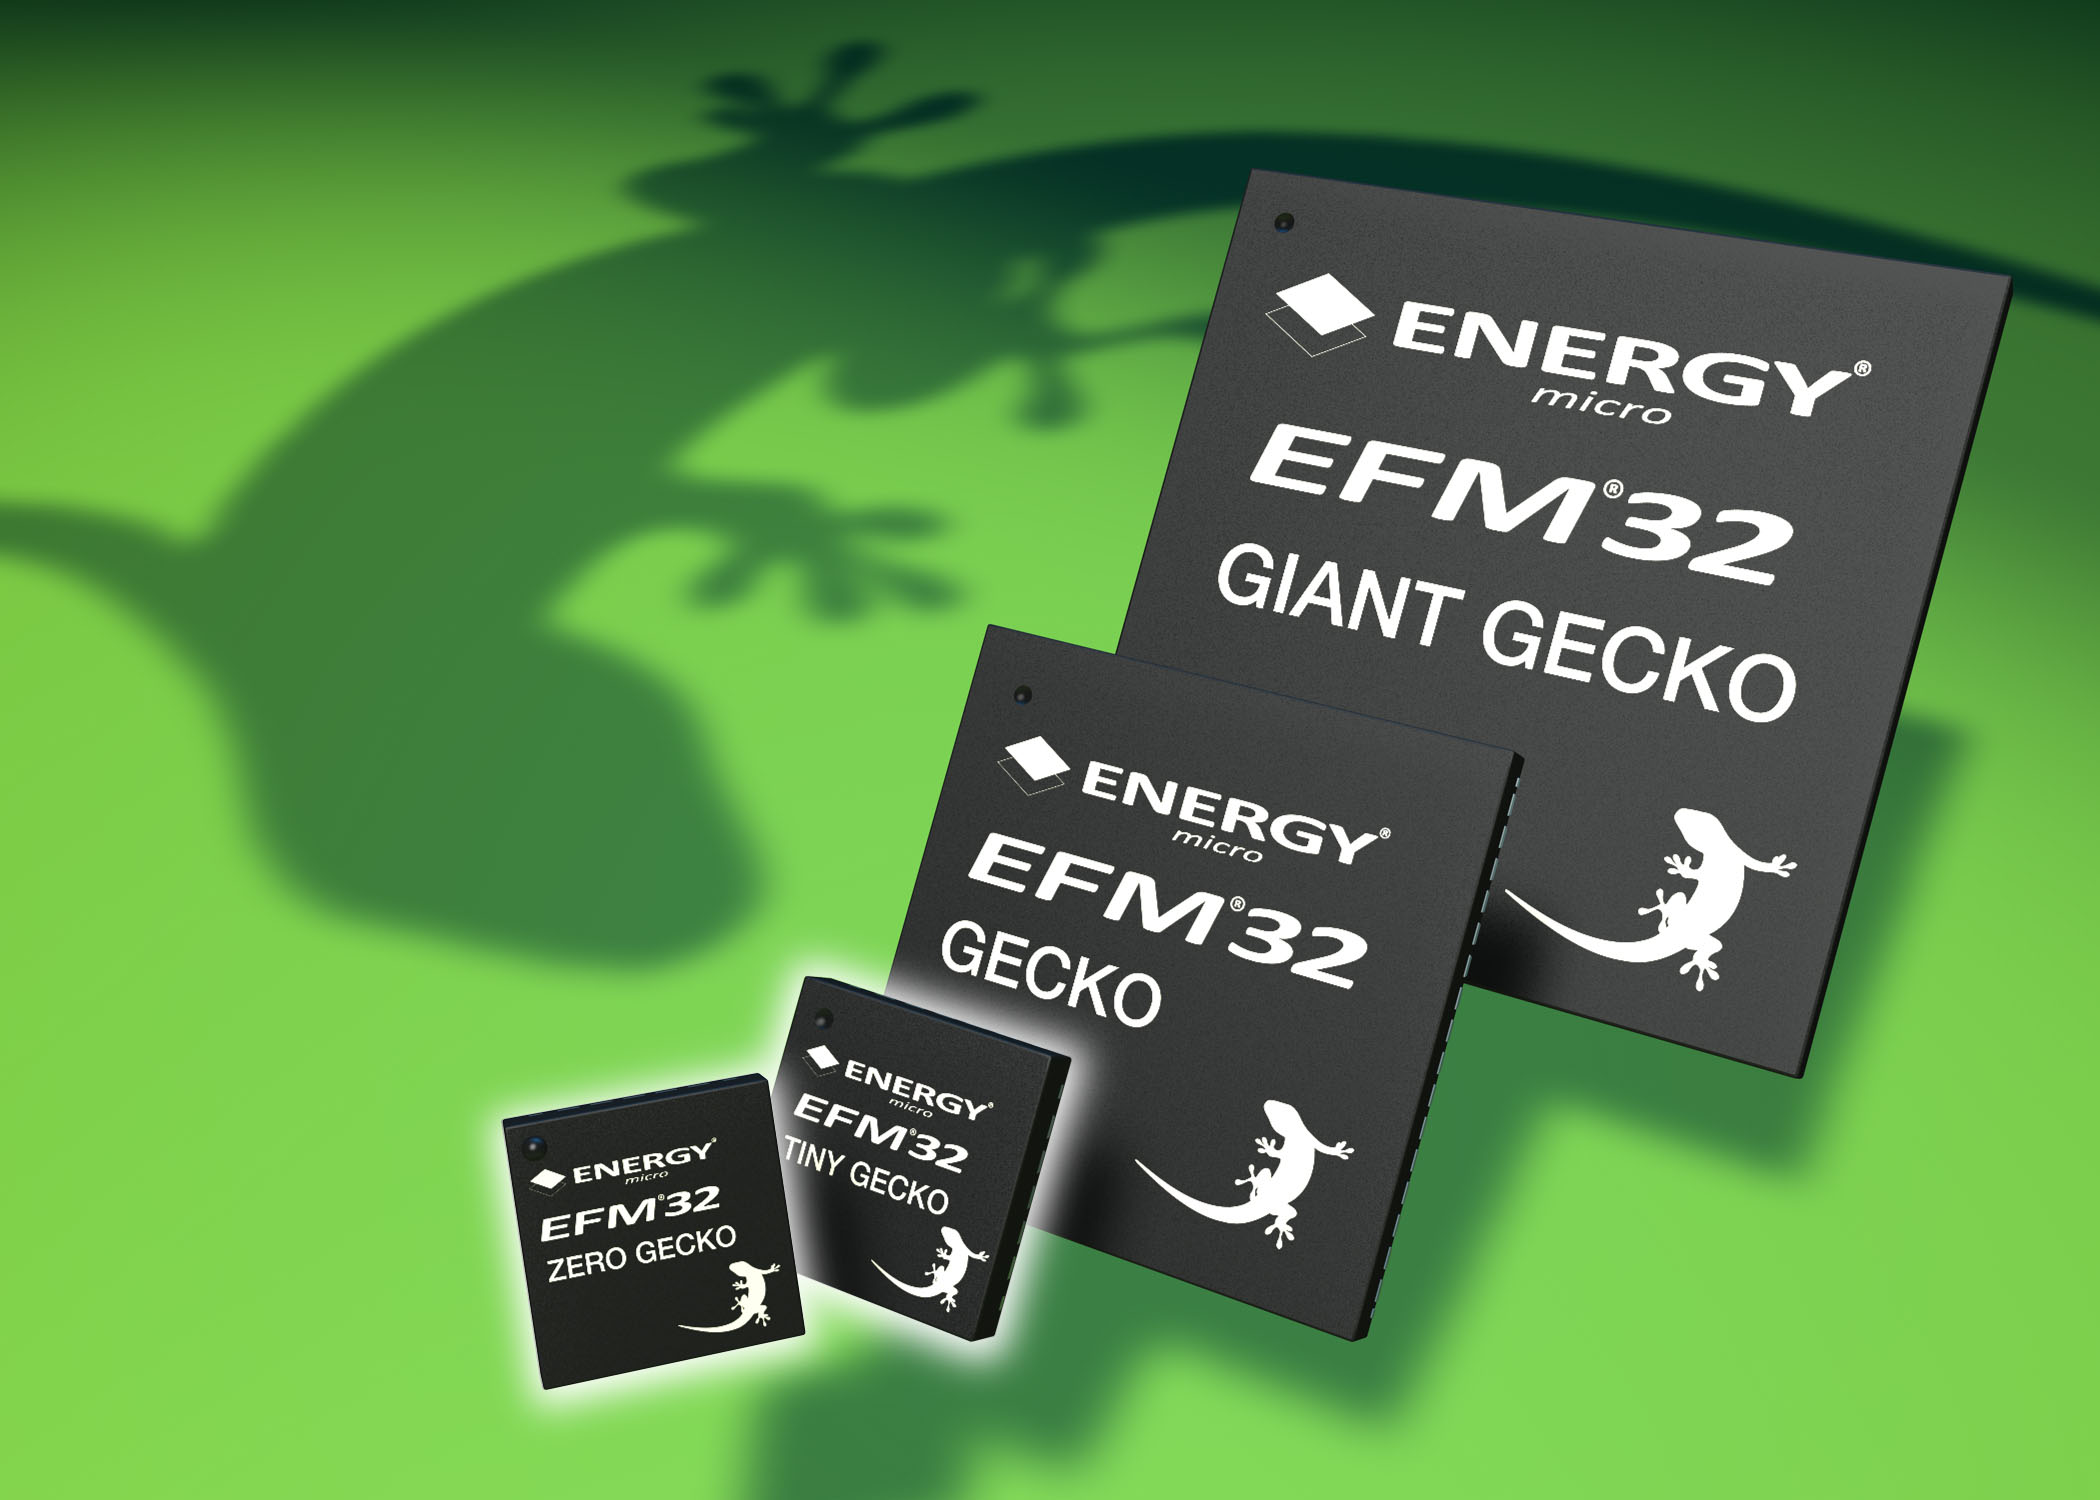 Energy Micro: Zero Gecko microcontollers